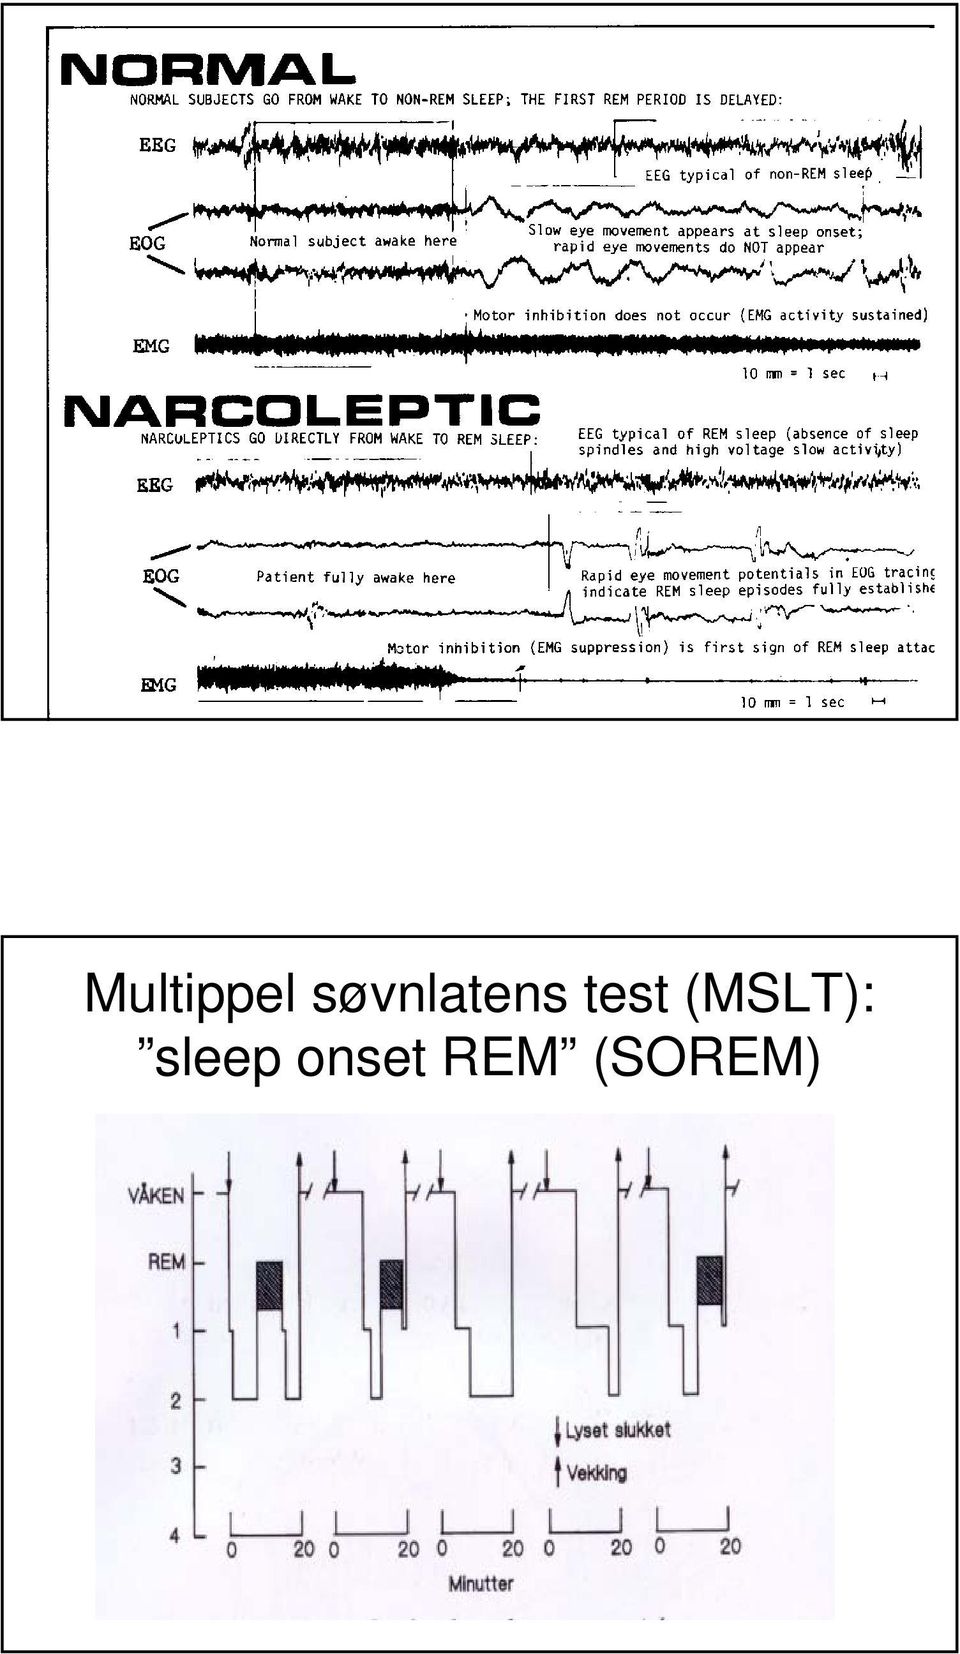 test (MSLT):